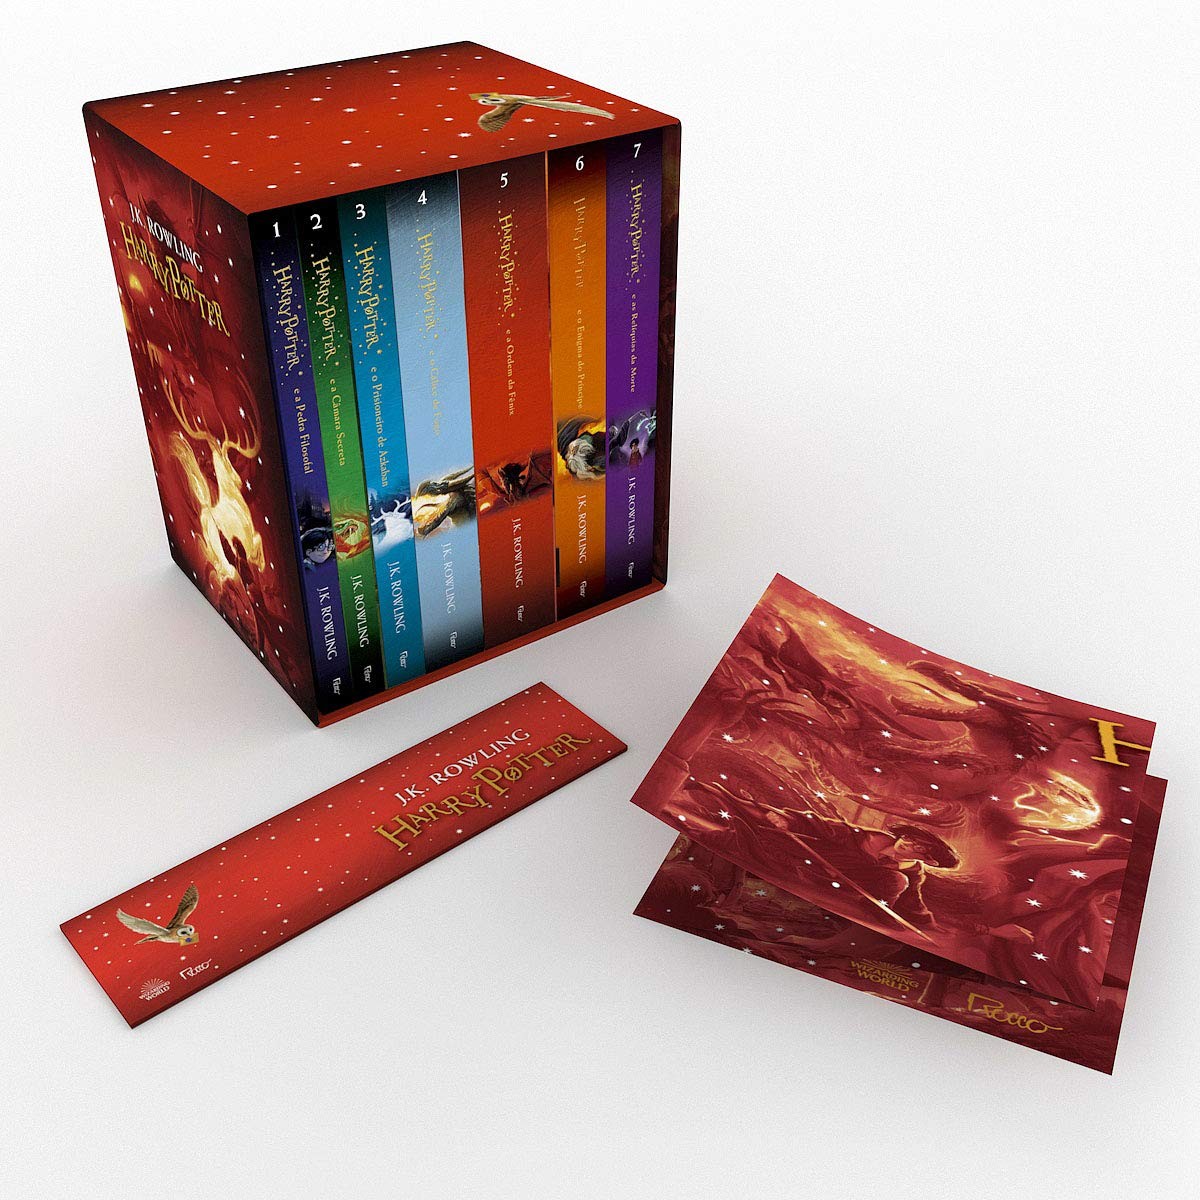 Caixa Harry Potter - Edição Premium + Pôster Exclusivo (Foto: Reprodução/Amazon)